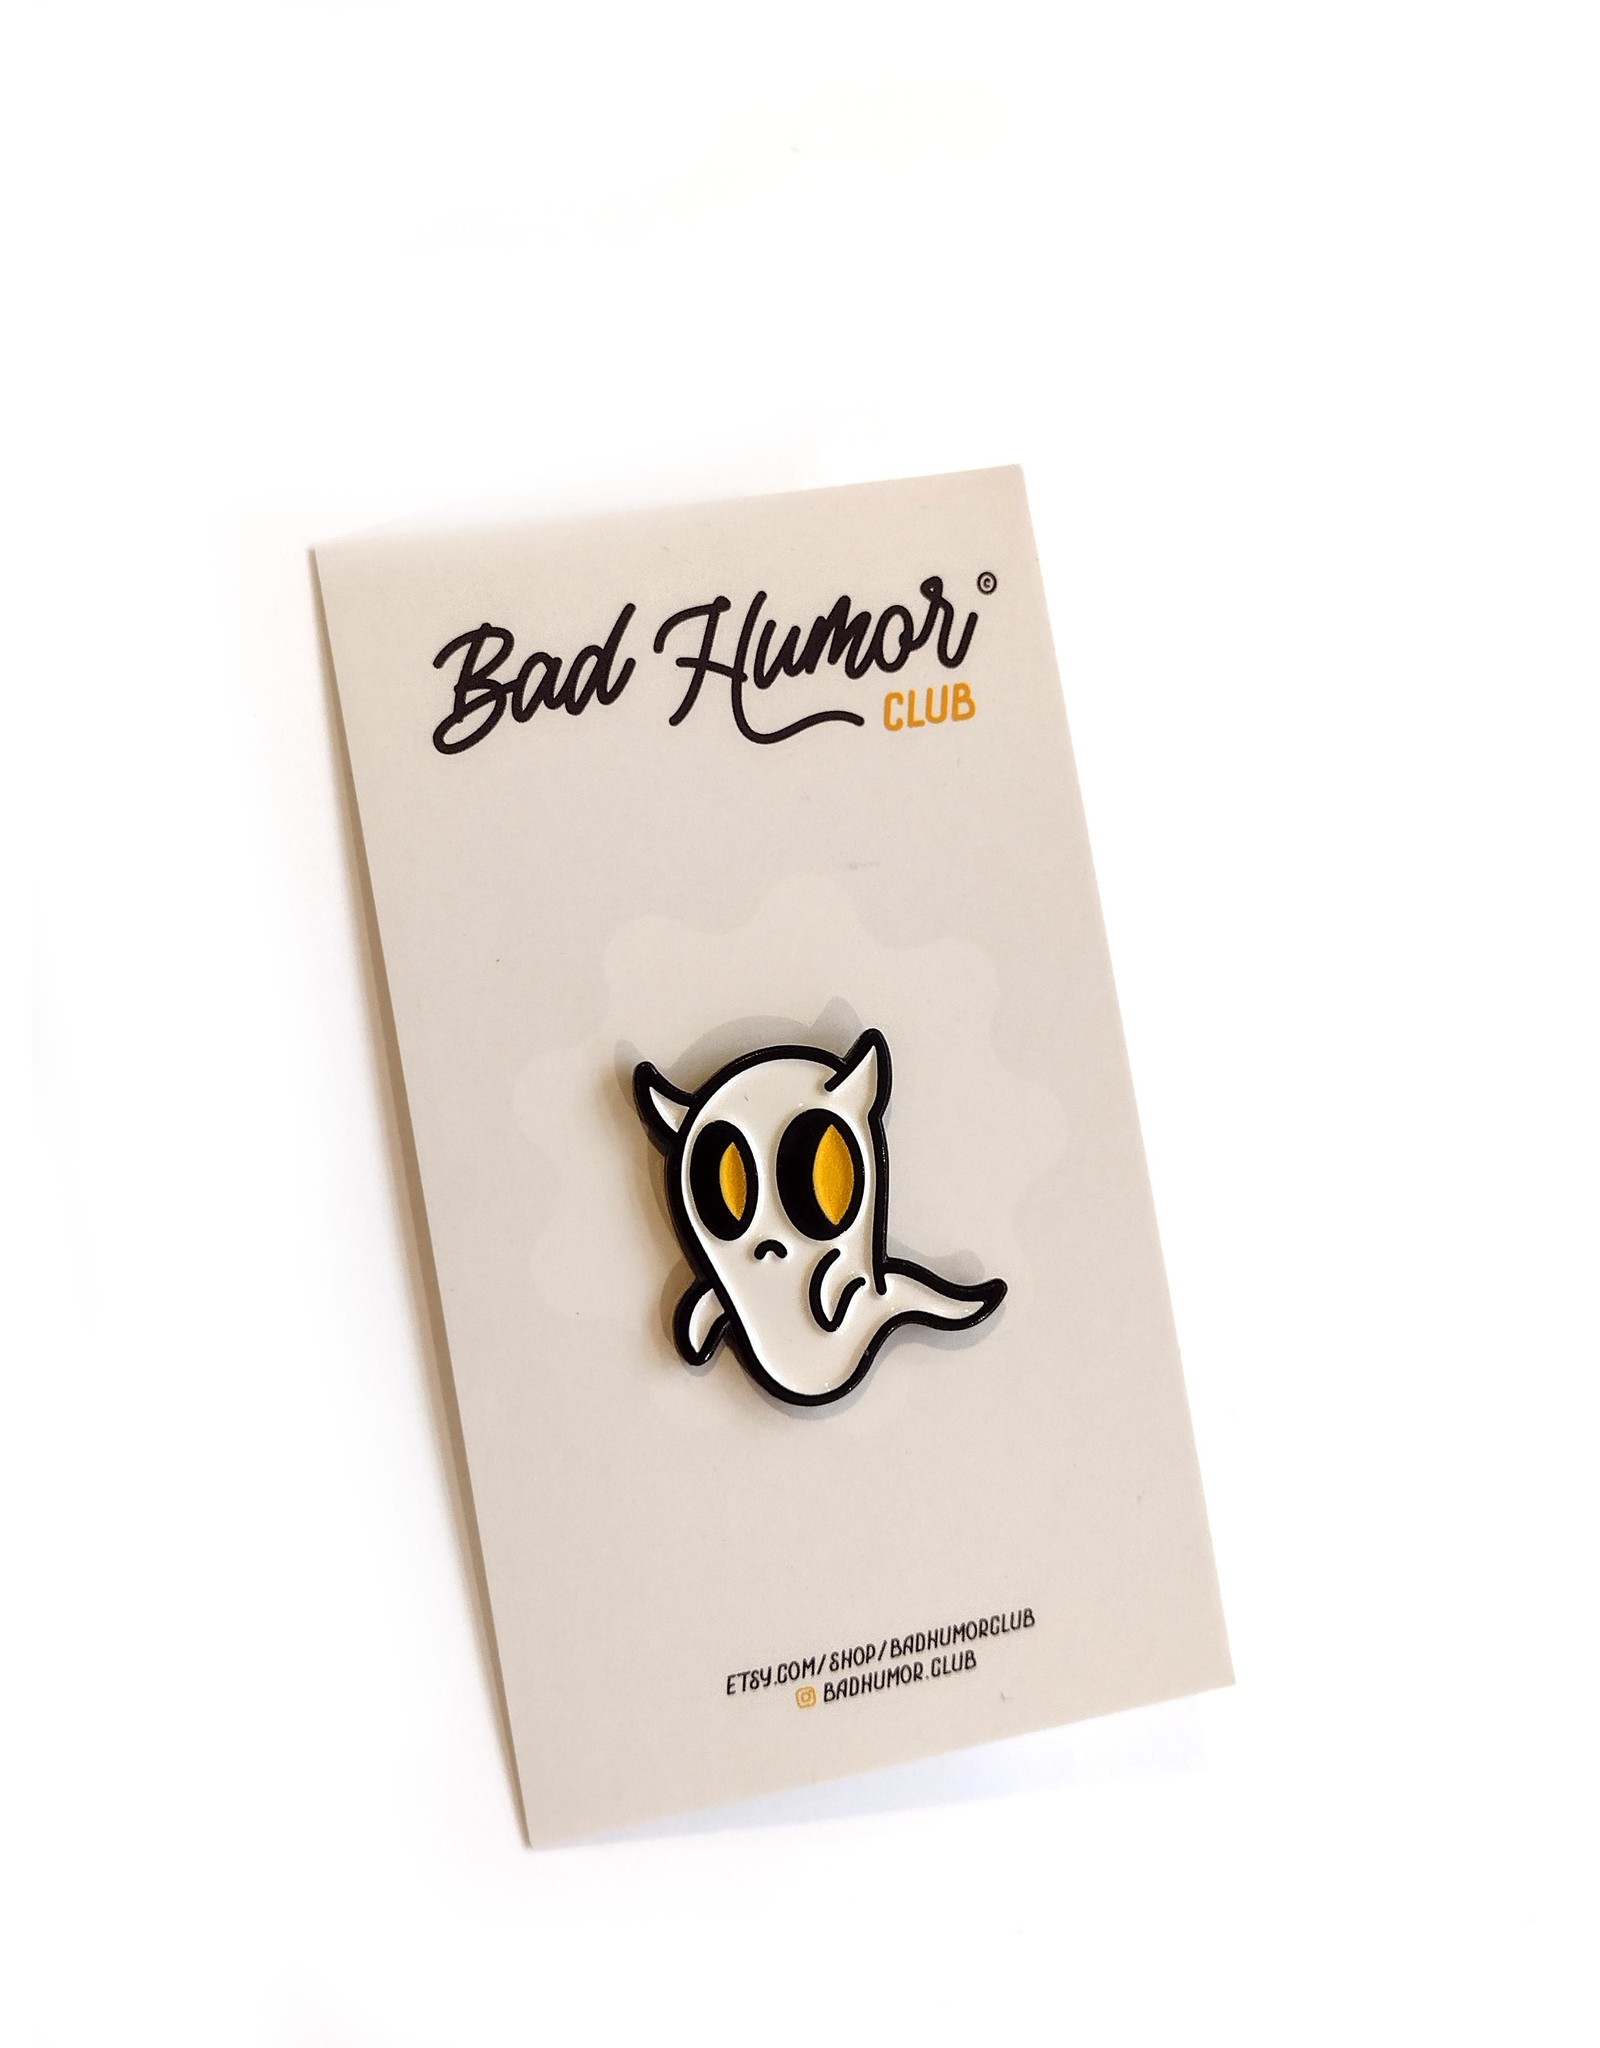 Bad Humor Club "Ghastly Ghoul"  enamel pin by Bad Humor Club